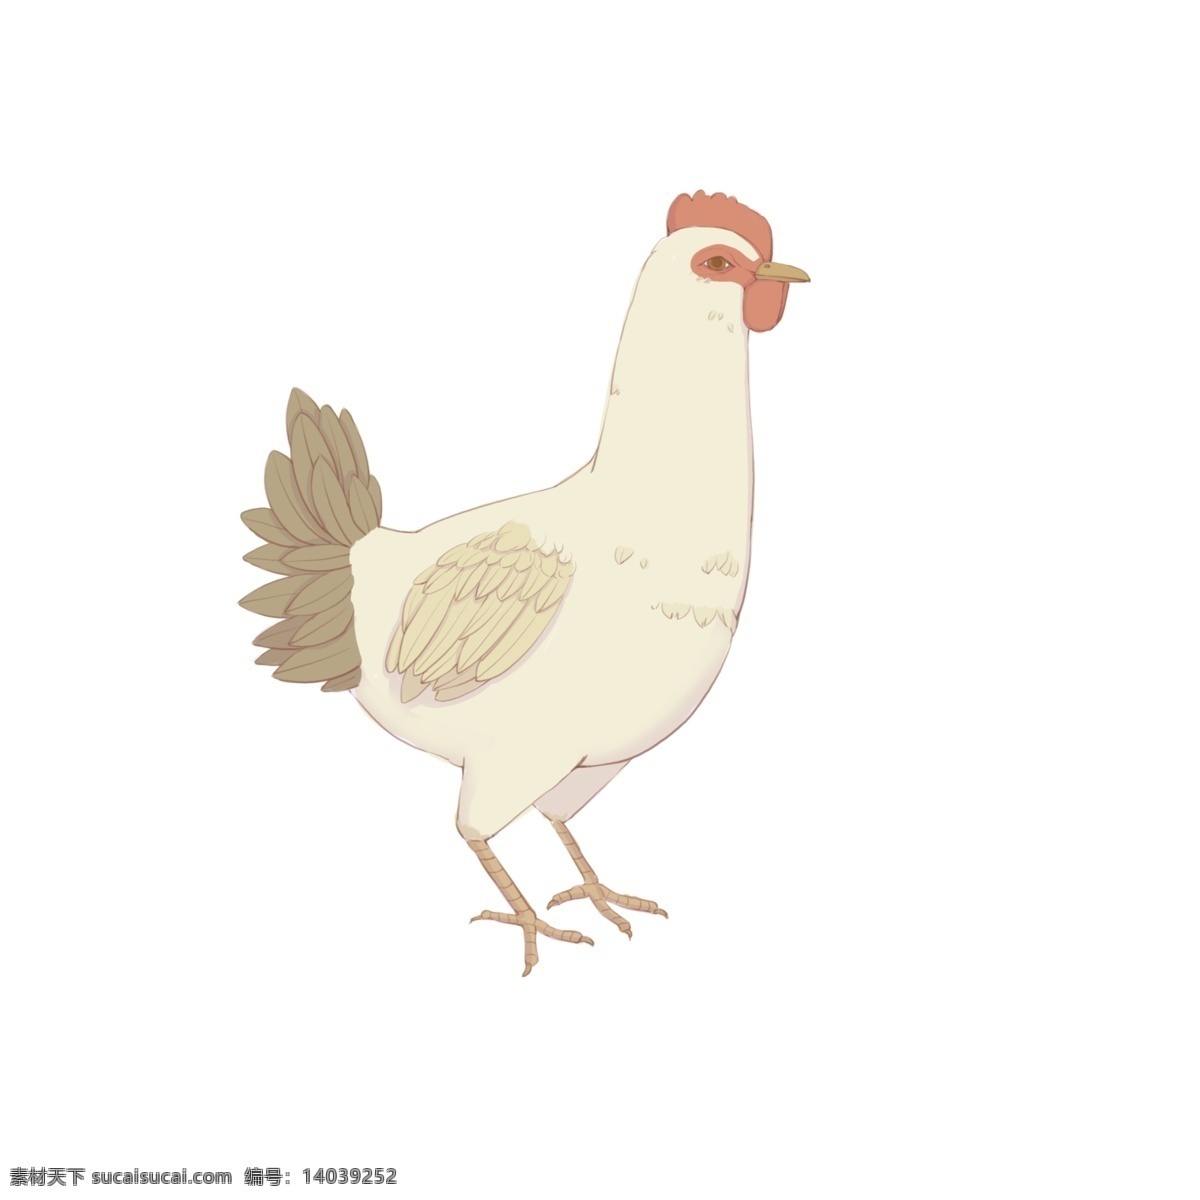 手绘 母鸡 动物 生物 商用 白鸡